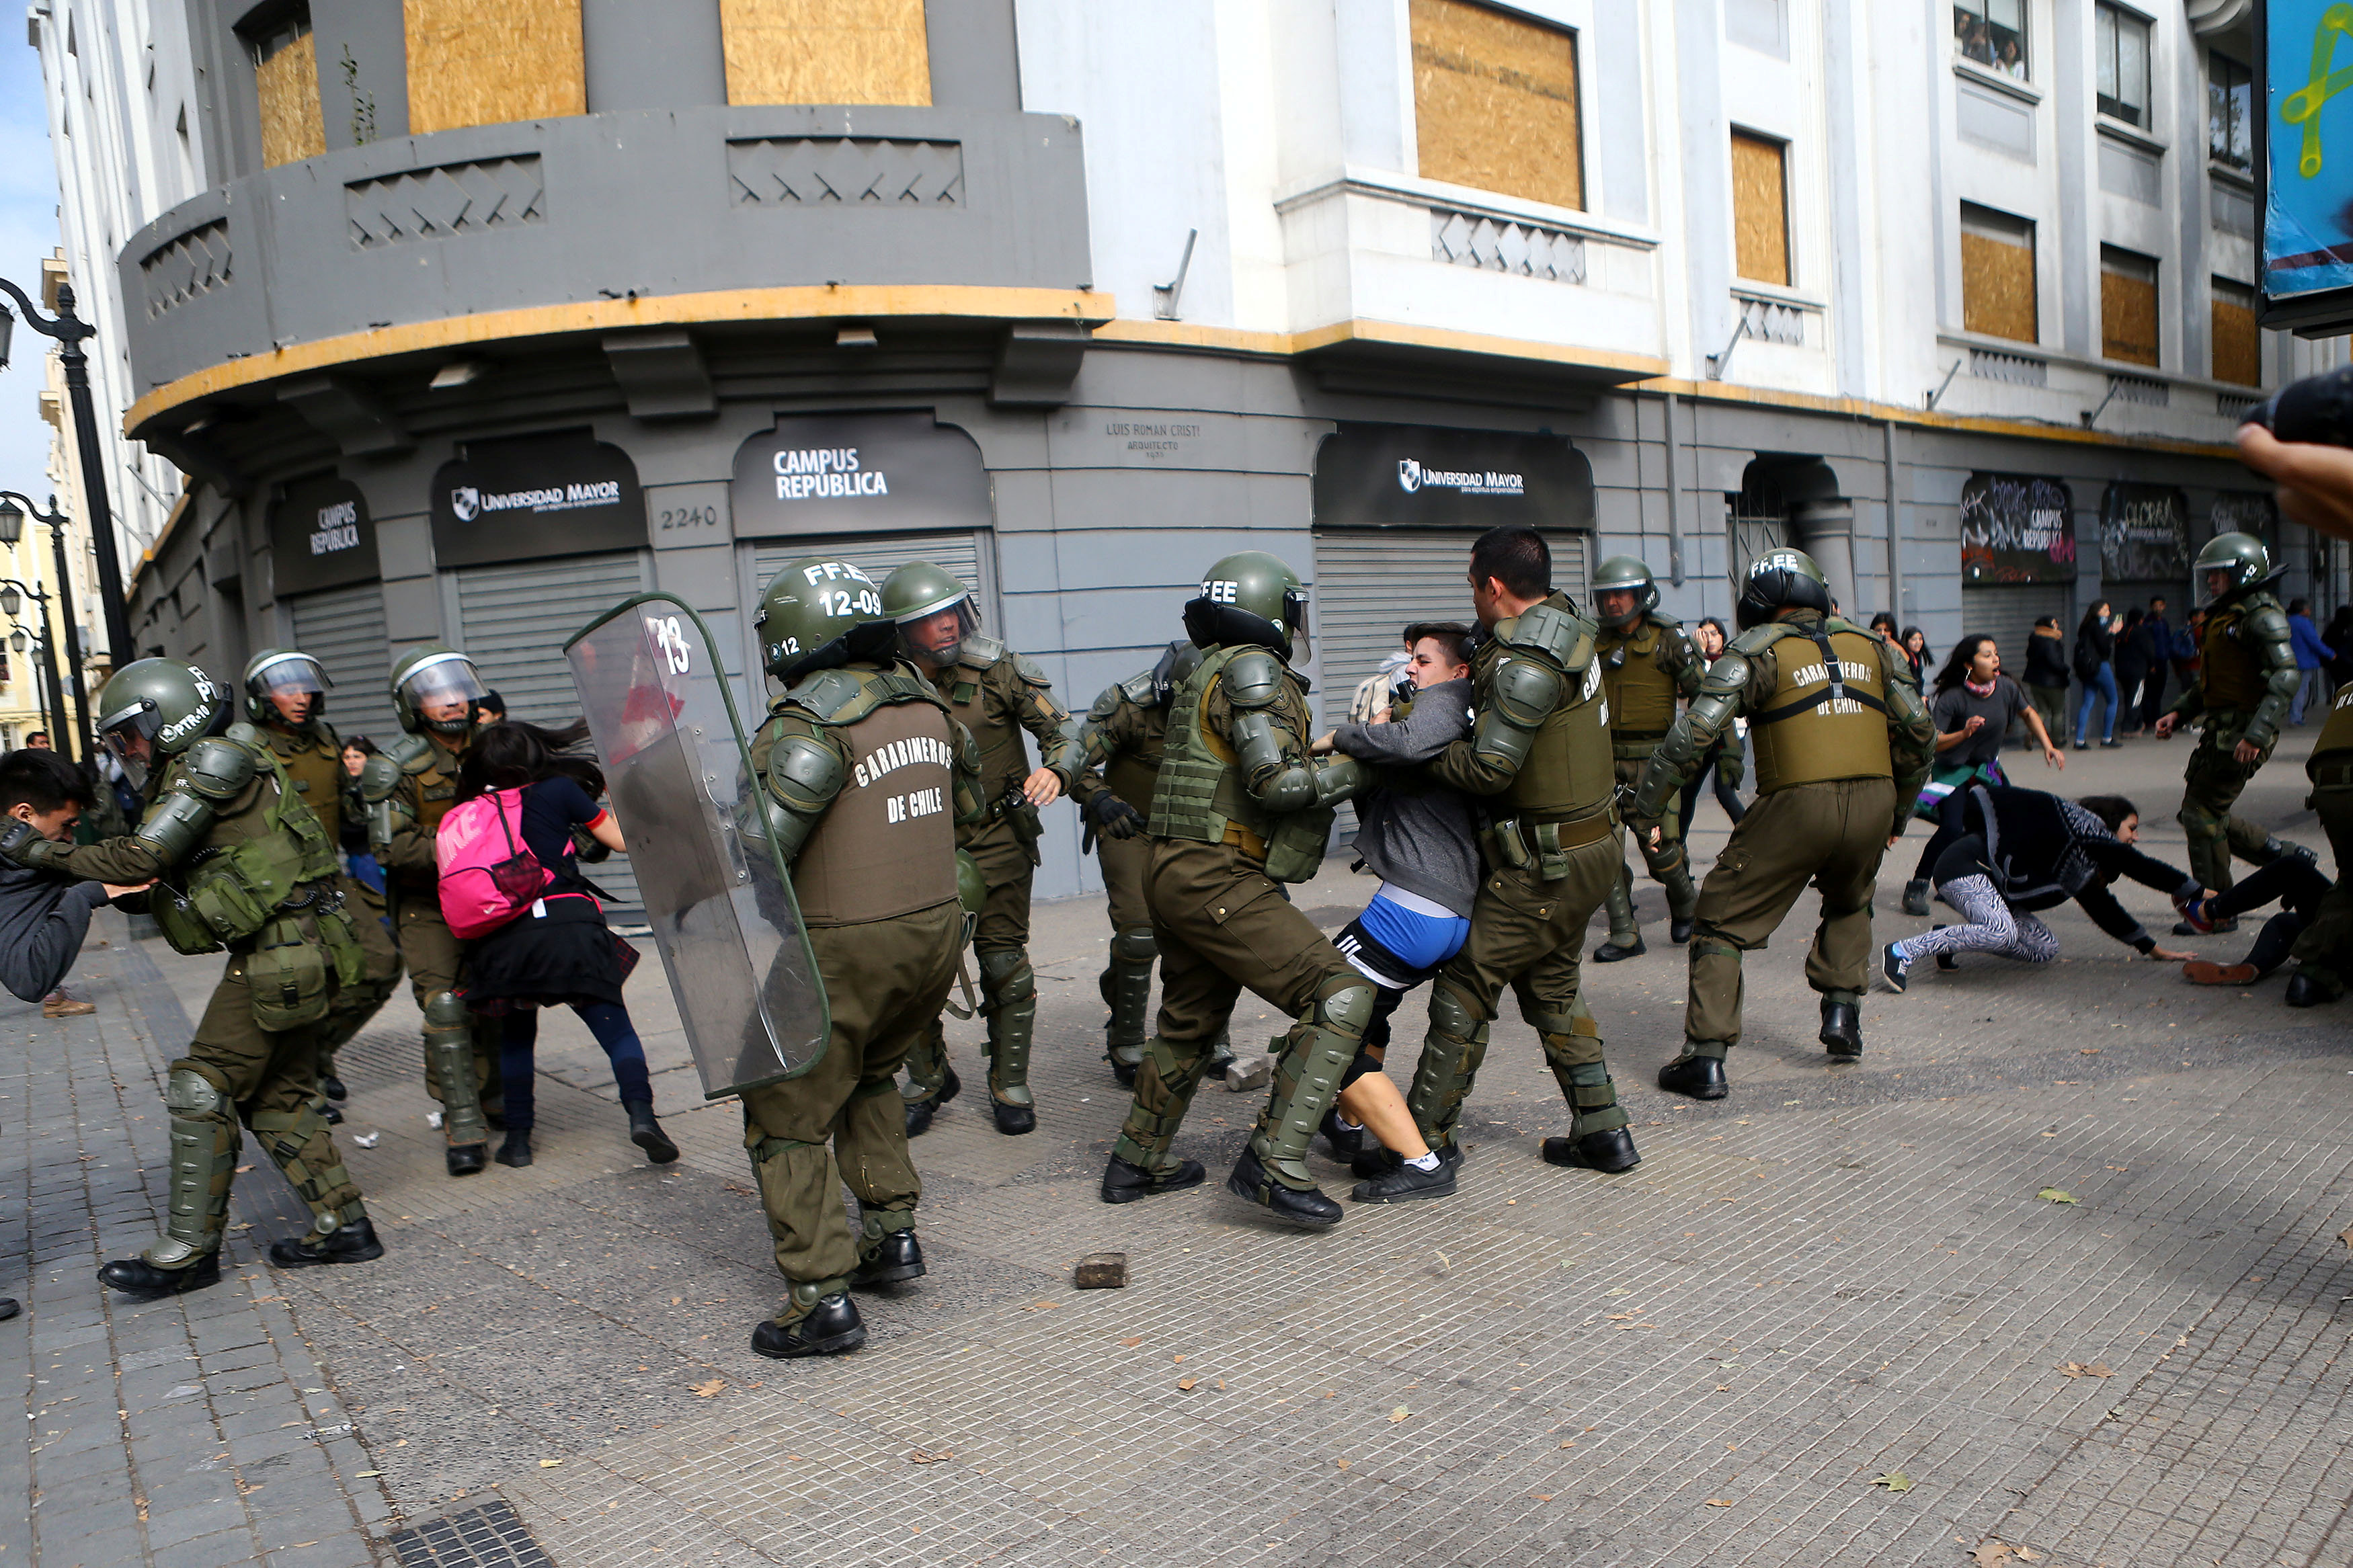 اشتباكات عنيفة بين الشرطة وطلاب فى تشيلى للمطالبة بإصلاح التعليم